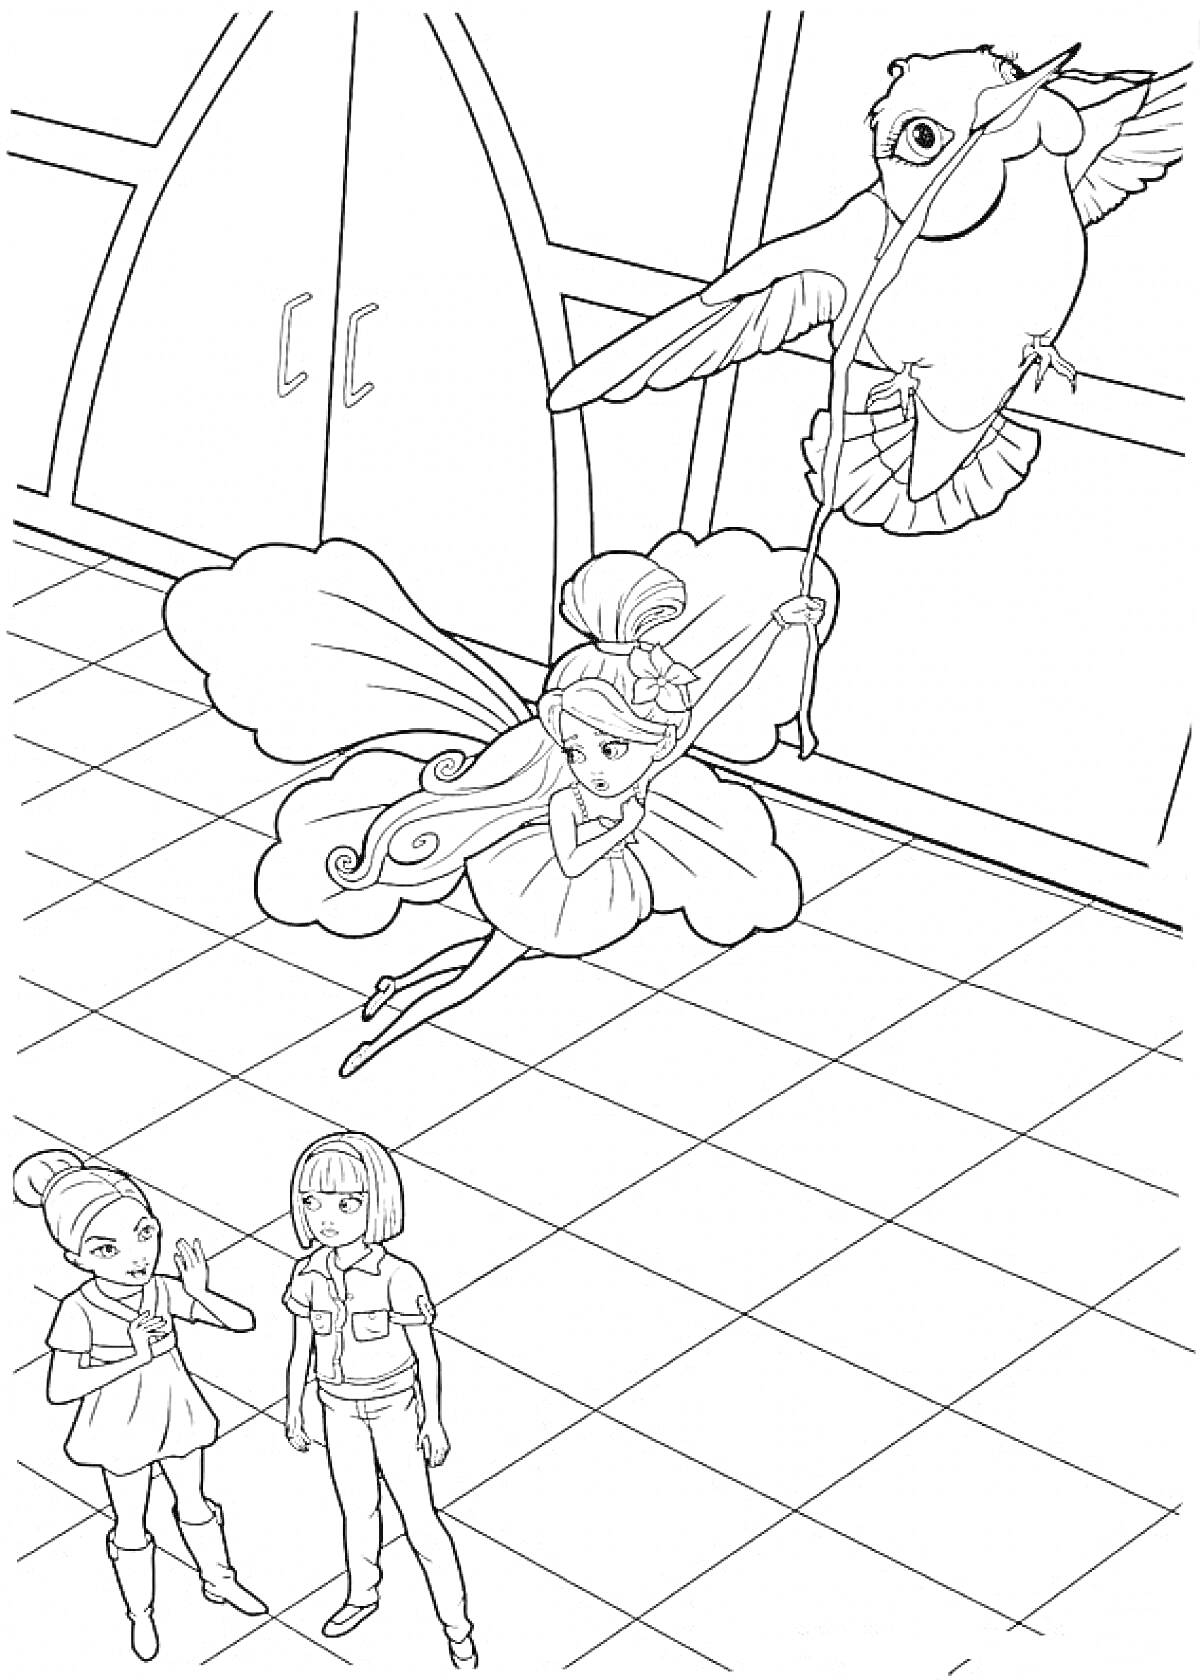 Барби Дюймовочка, летающая фея с большими крыльями, держащаяся за ножку птицы, две девушки на земле, одежда с короткими рукавами, плиточный пол.